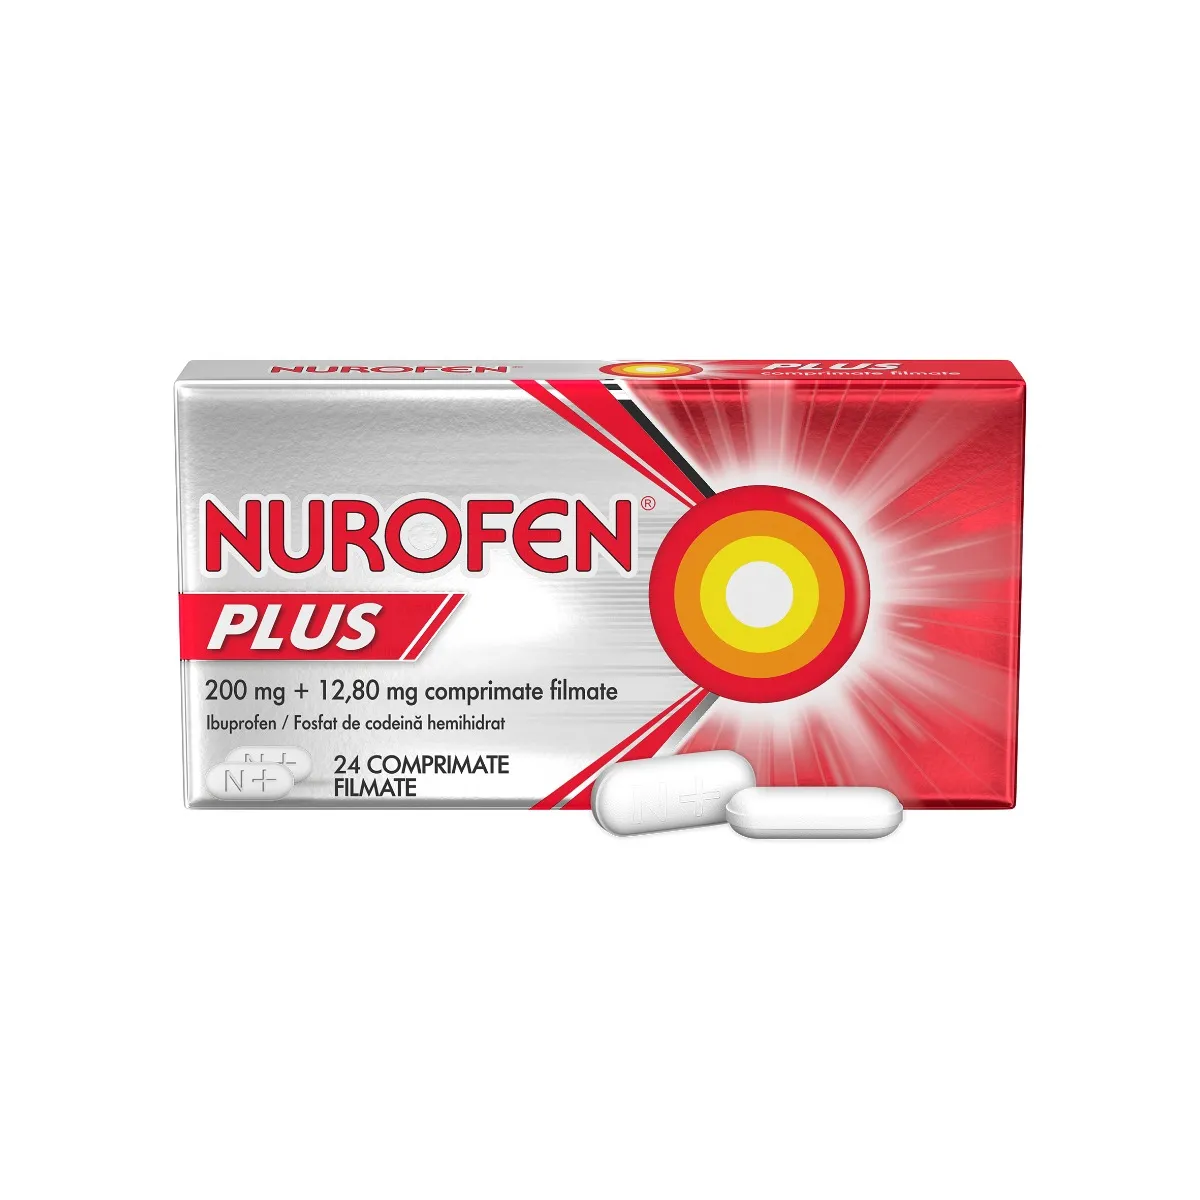 Nurofen Plus, 24 tablete, Reckitt Benckiser